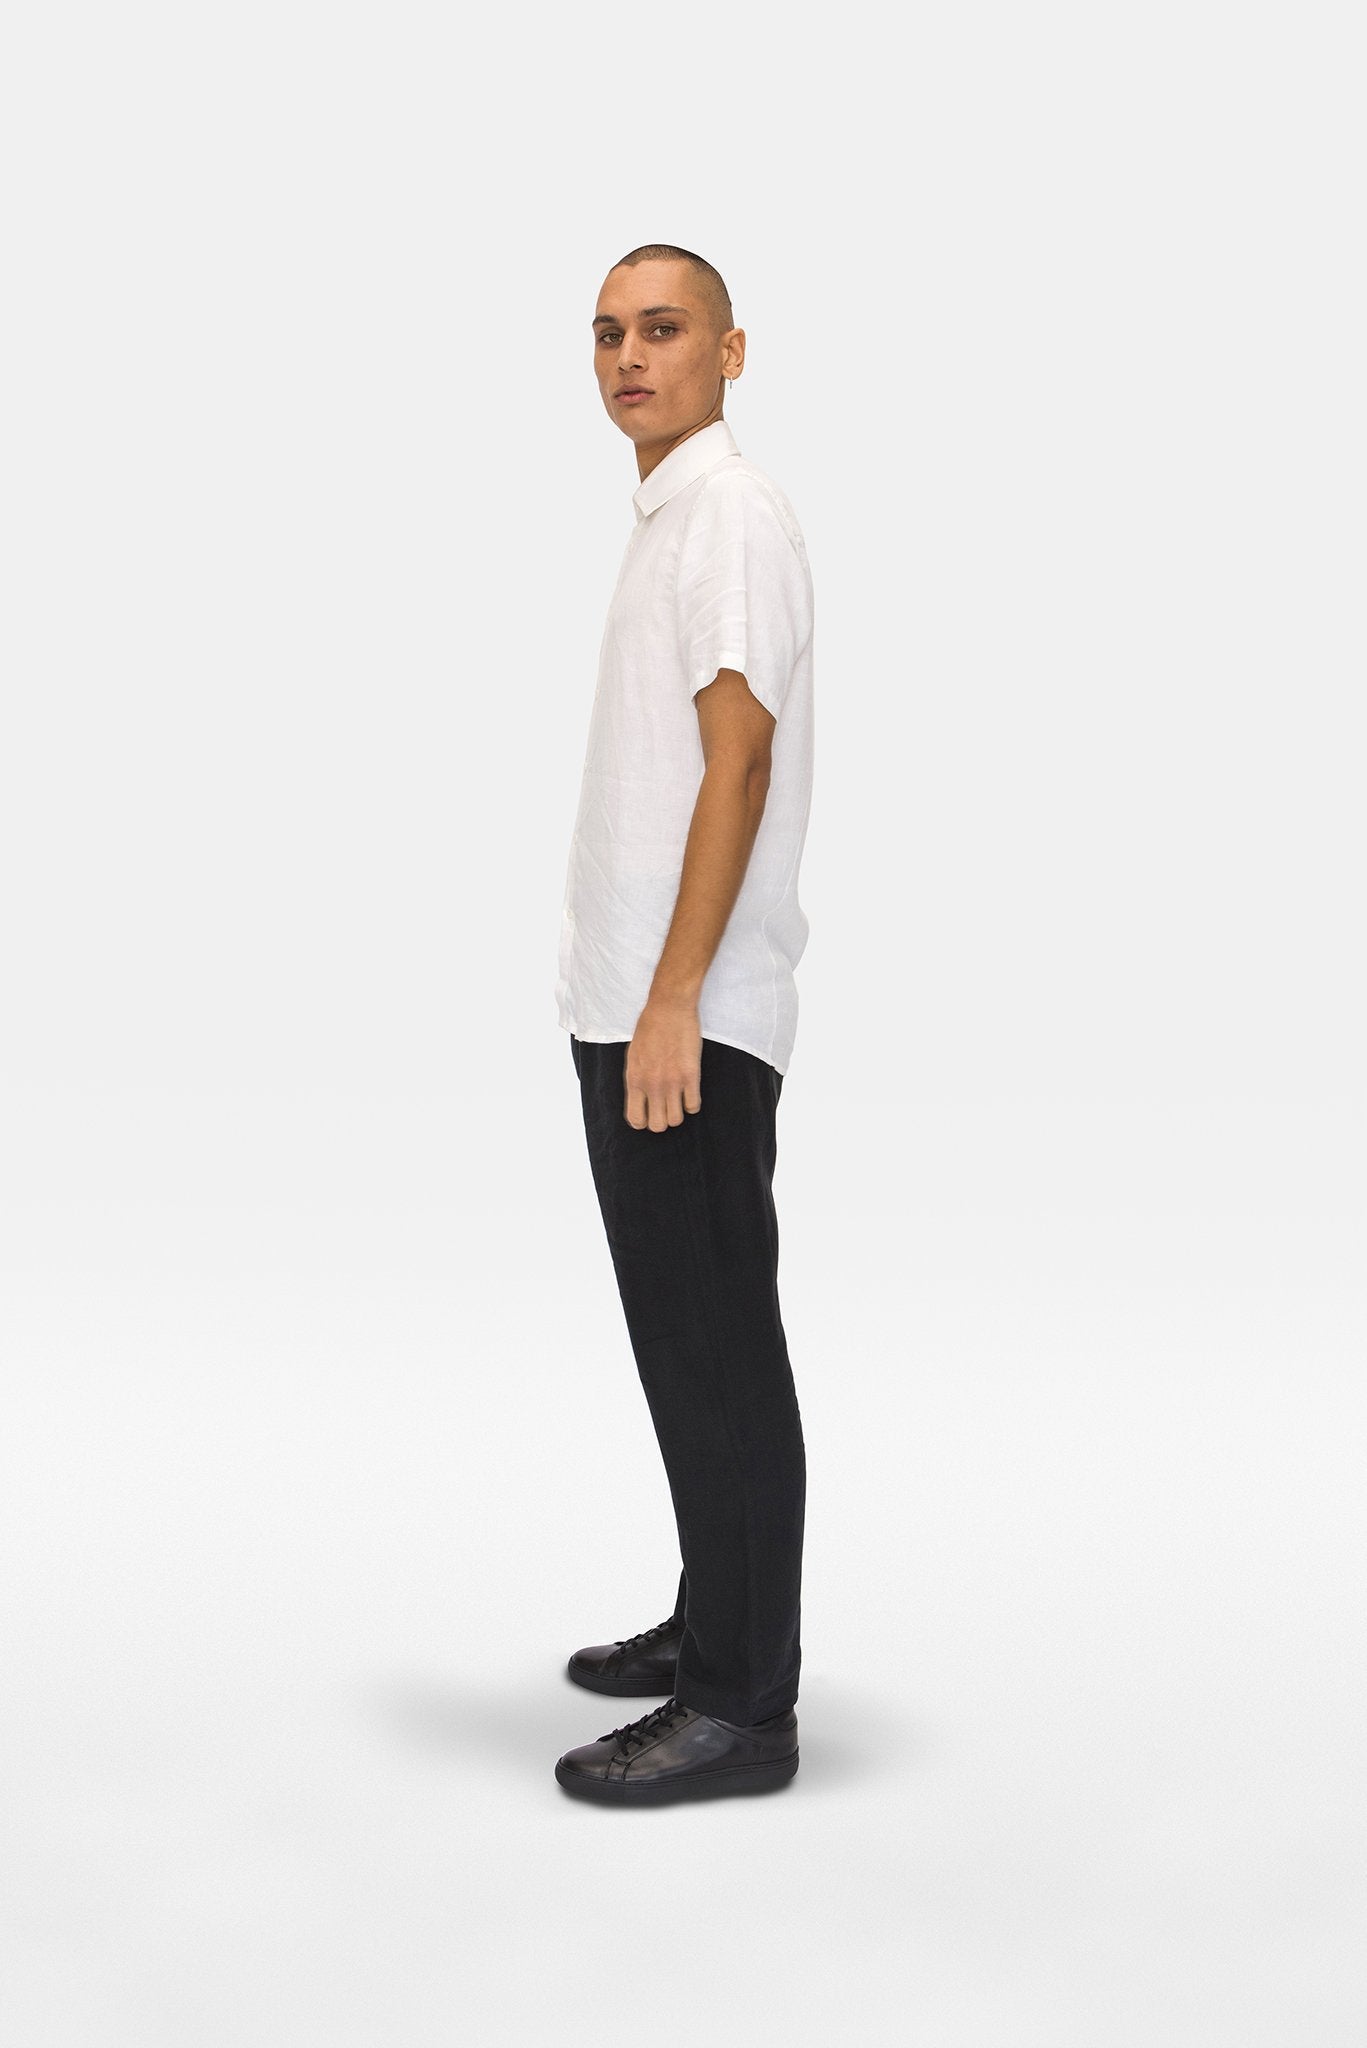 A.BCH A.04 White Short Sleeve Button Up Shirt in Organic Linen